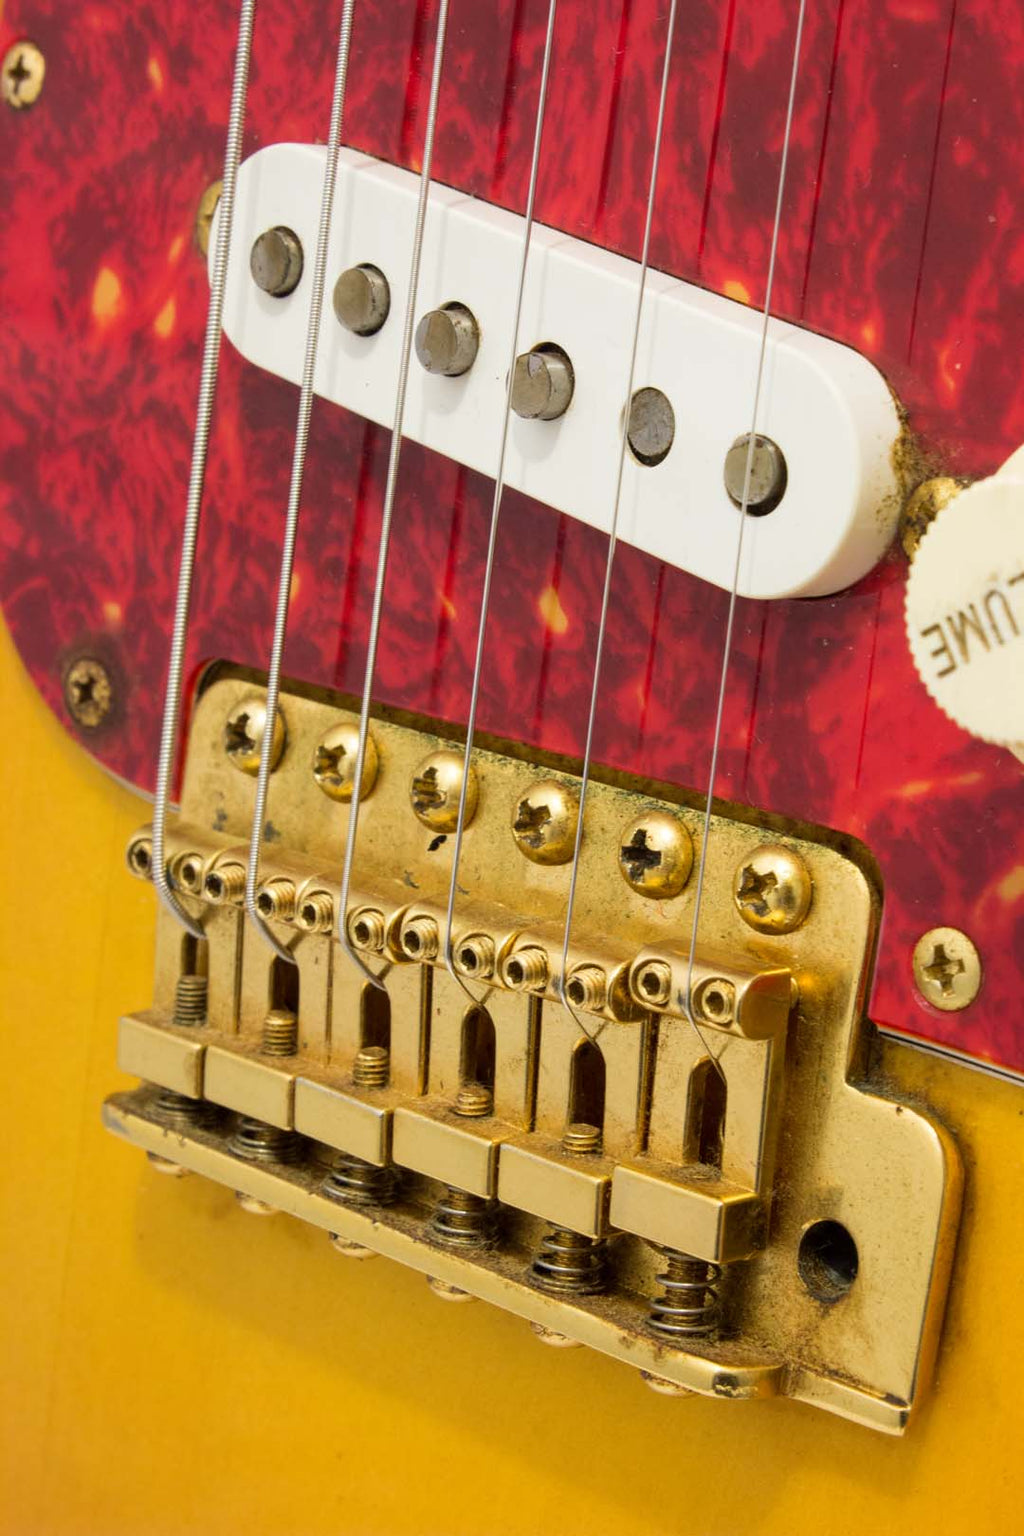 Fender Japan '71 Stratocaster ST71-85TX Sunburst 2000